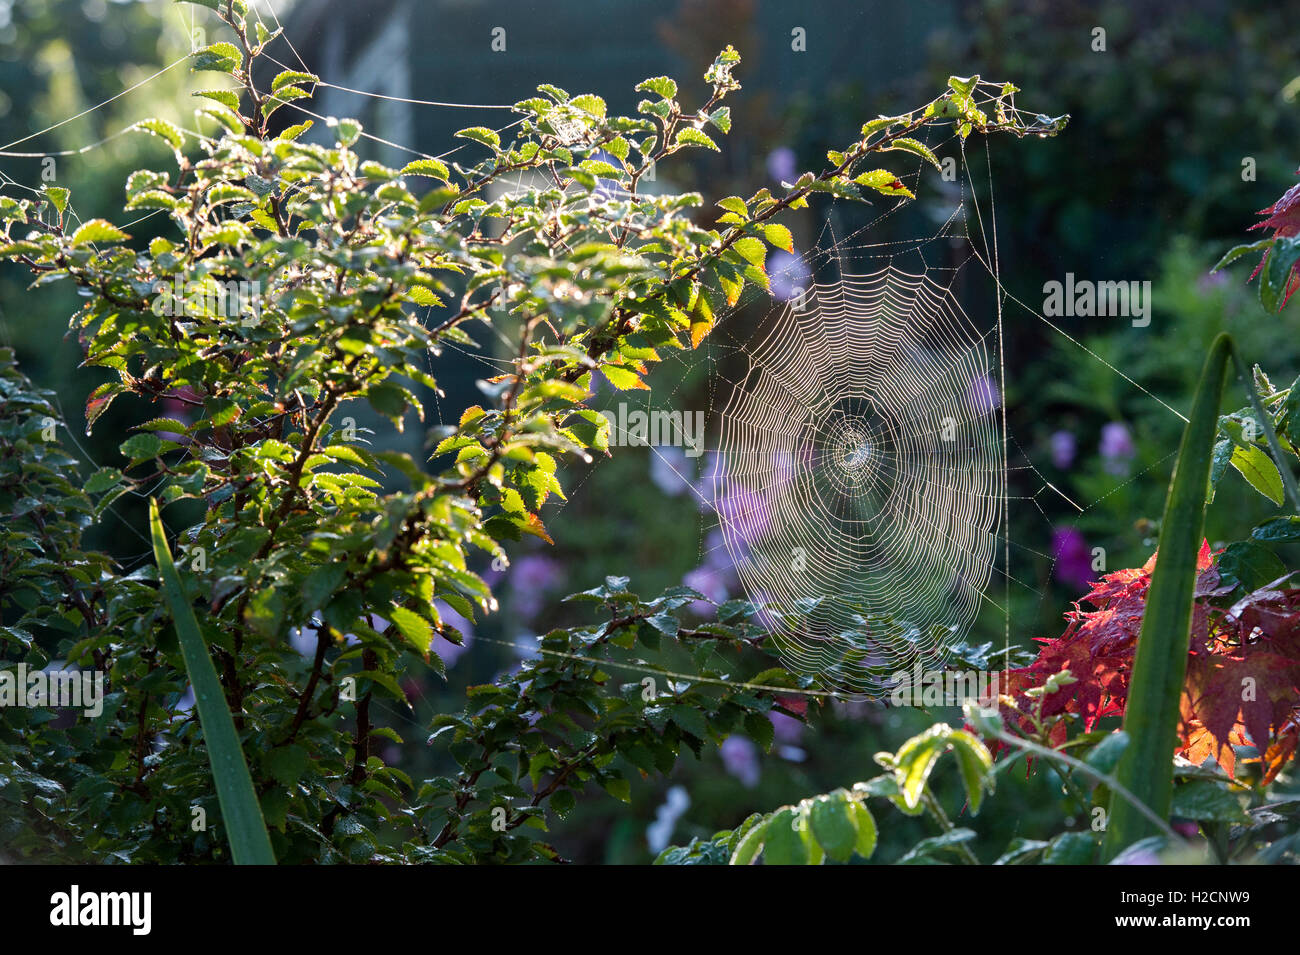 La lumière du soleil du matin l'éclairage d'une web spiders dans un jardin anglais à l'automne Banque D'Images